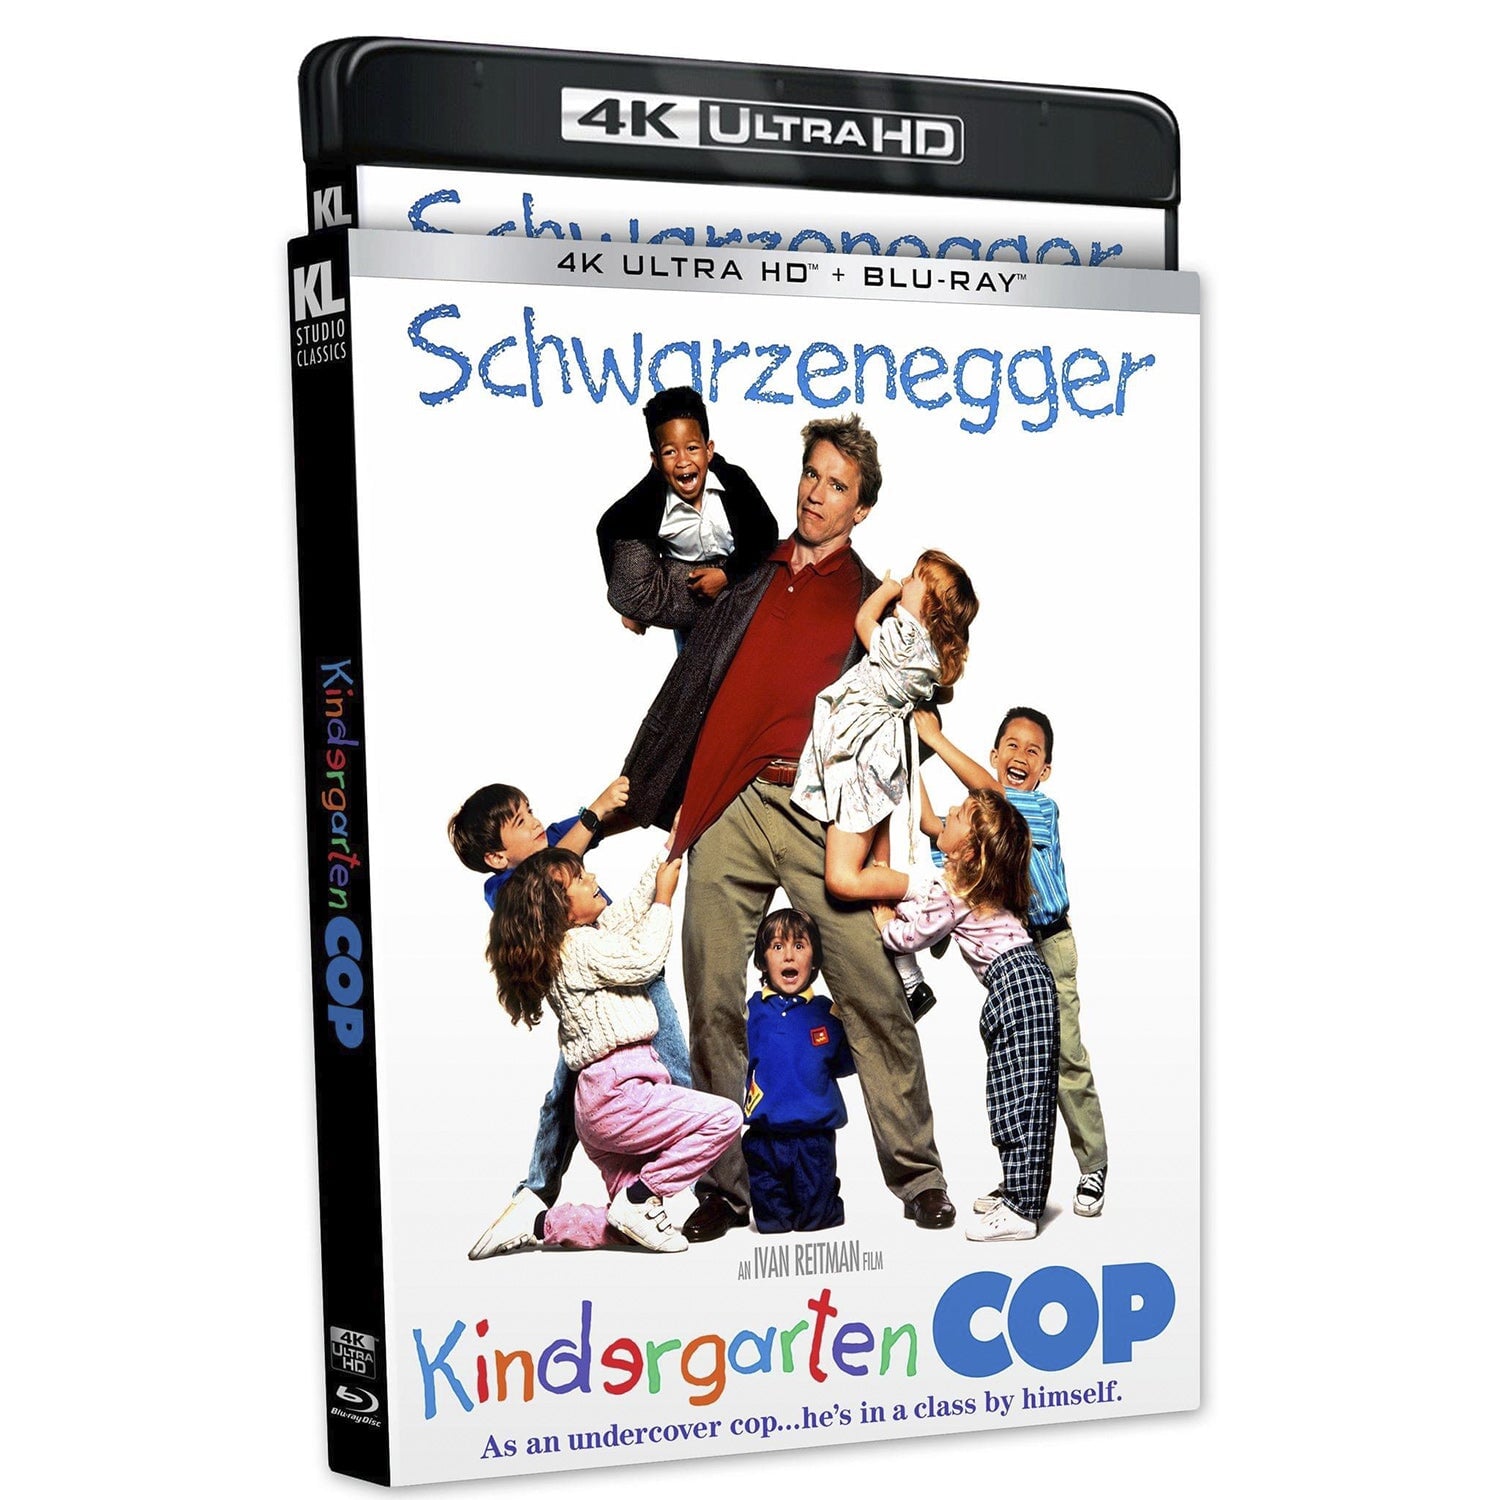 Kindergarten Cop (1990) (English) (4K UHD + Blu-ray)